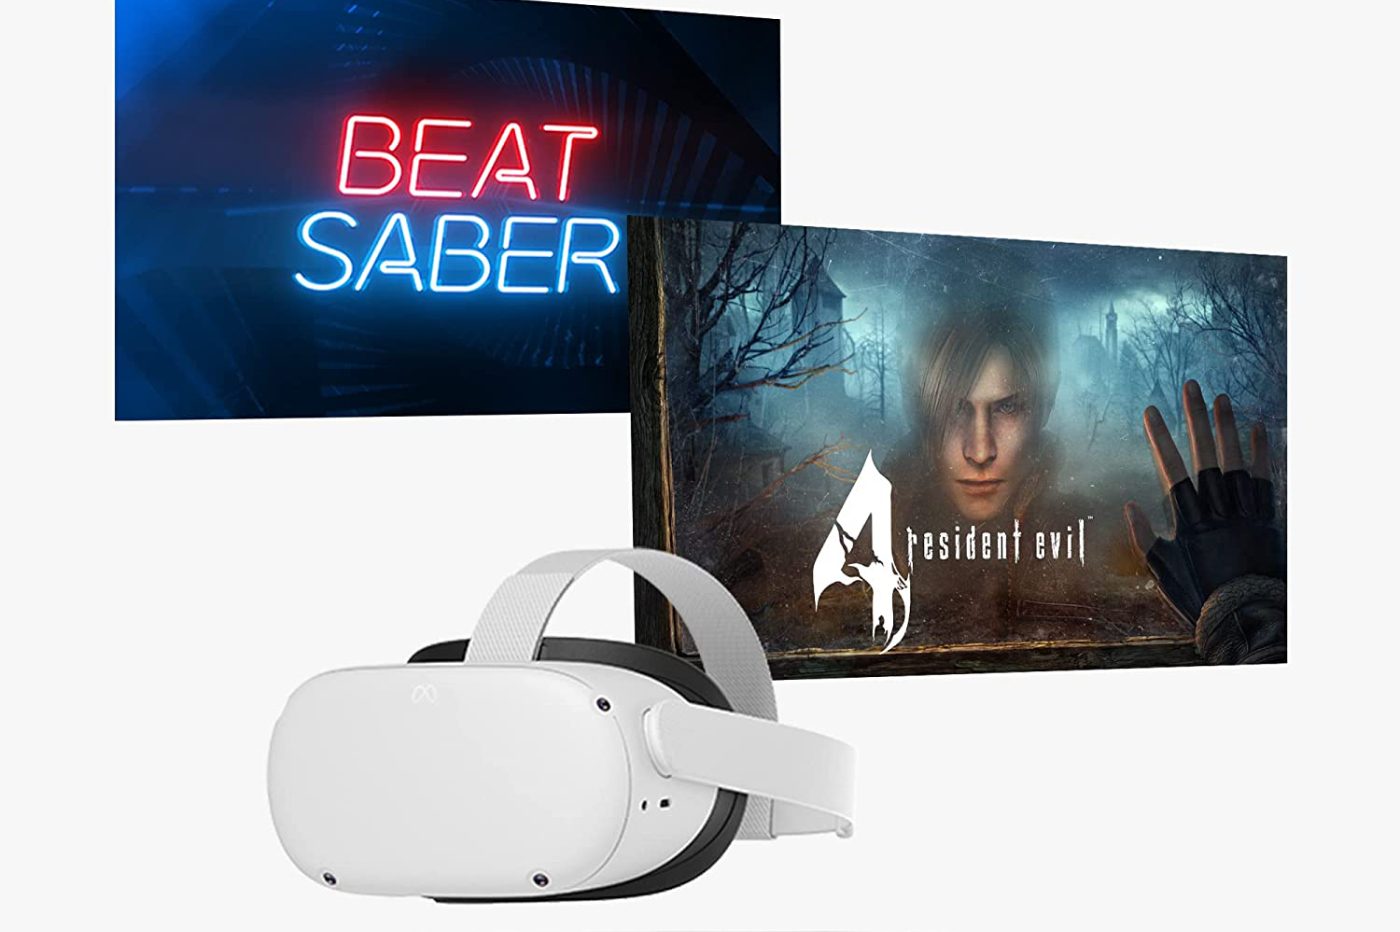 L'Oculus Quest 2, le meilleur casque VR de tous les temps ?